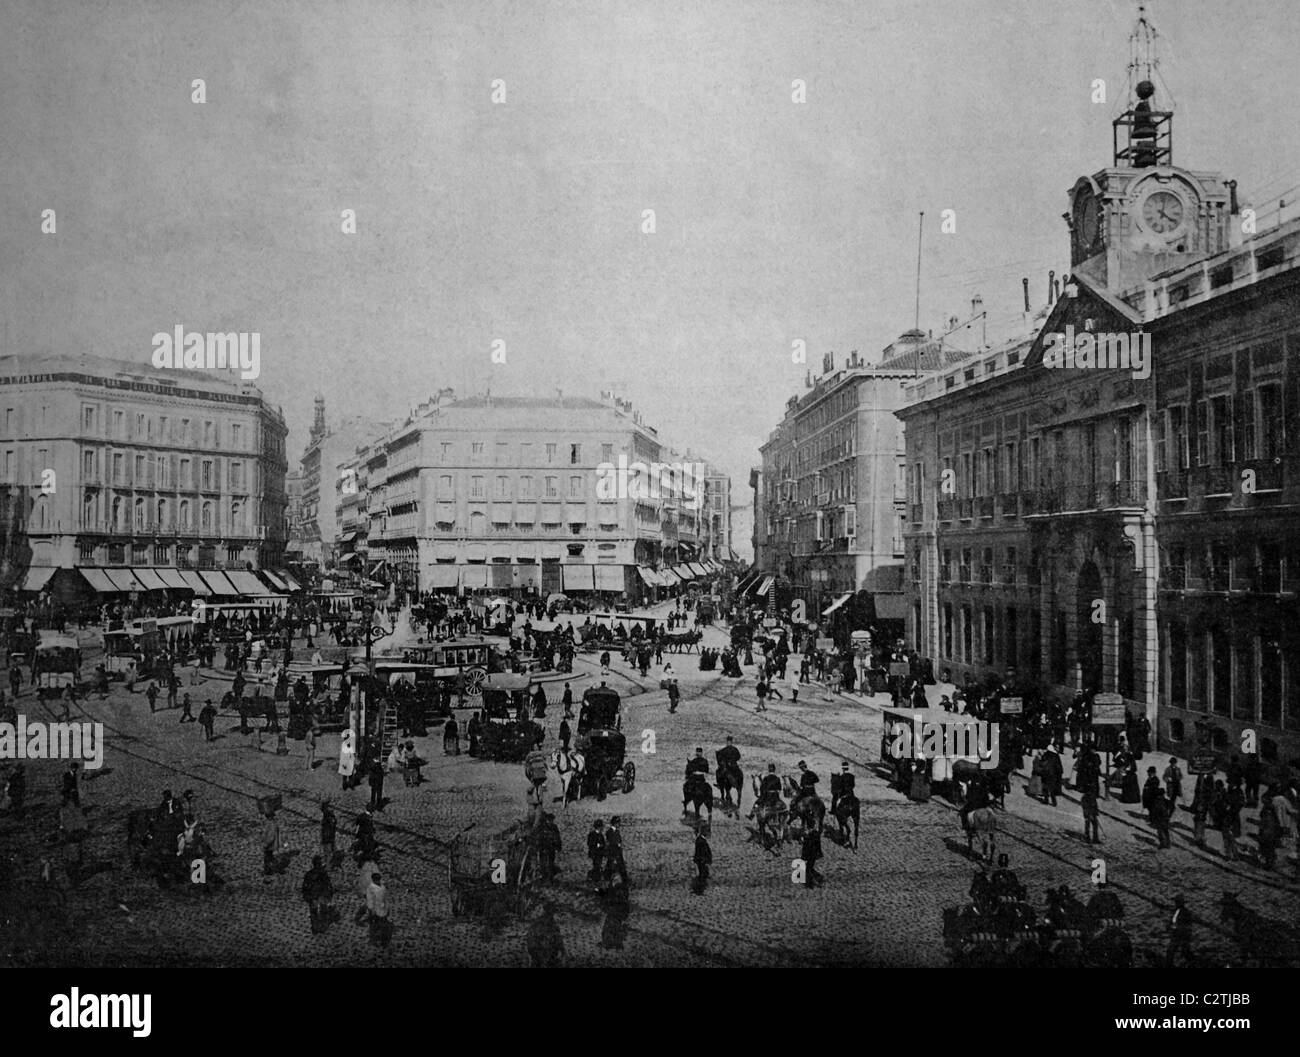 Frühe Autotype von der Puerta del Sol Platz, Madrid, Spanien, Geschichtsbild, 1884 Stockfoto